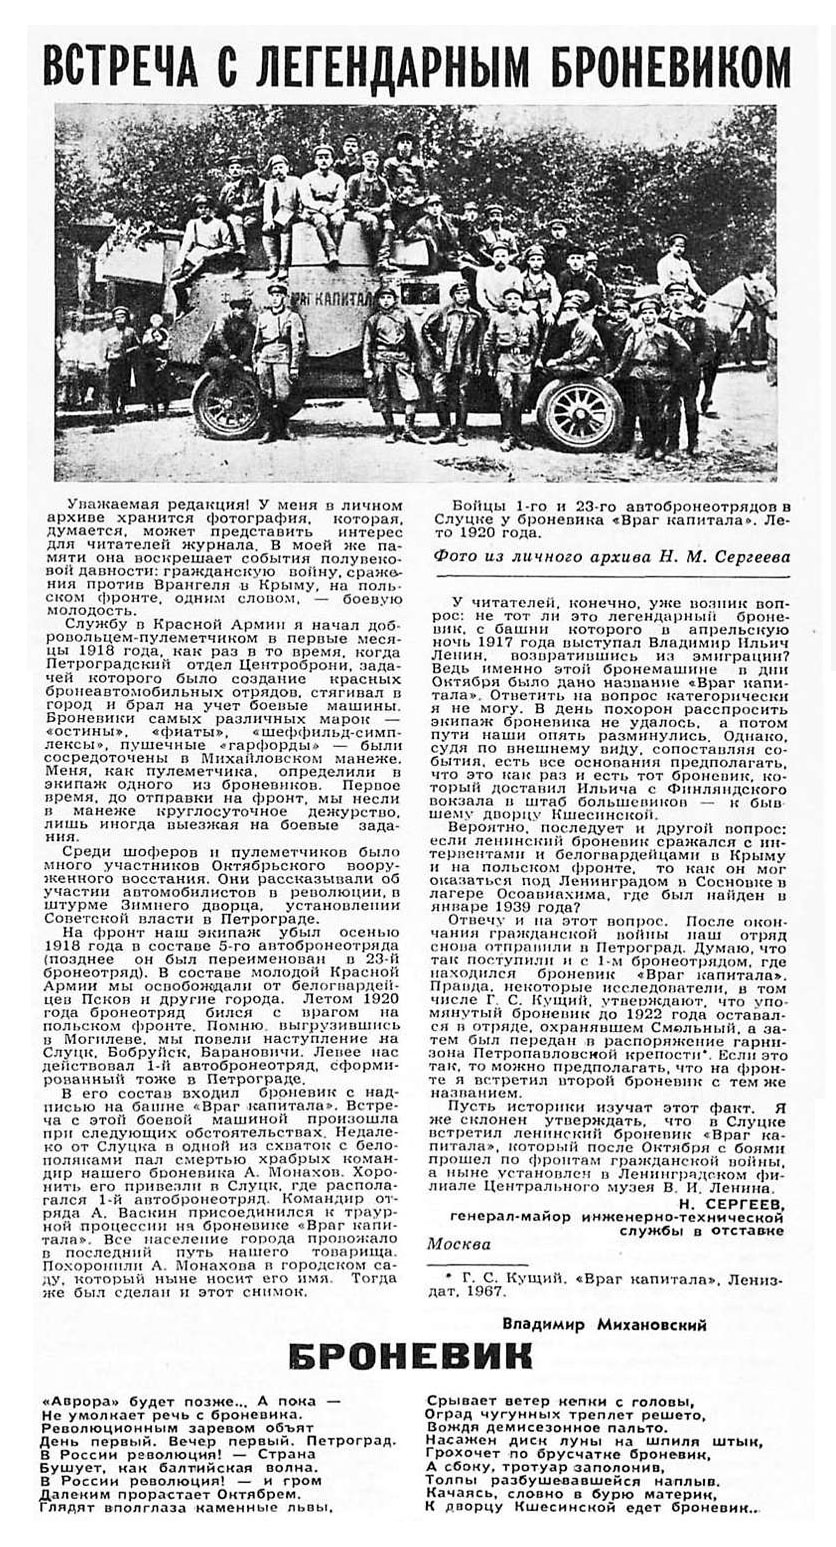 Статья генерала-майора инженерно-технической службы в отставке Н.М. Сергеева «Встреча с легендарным броневиком»